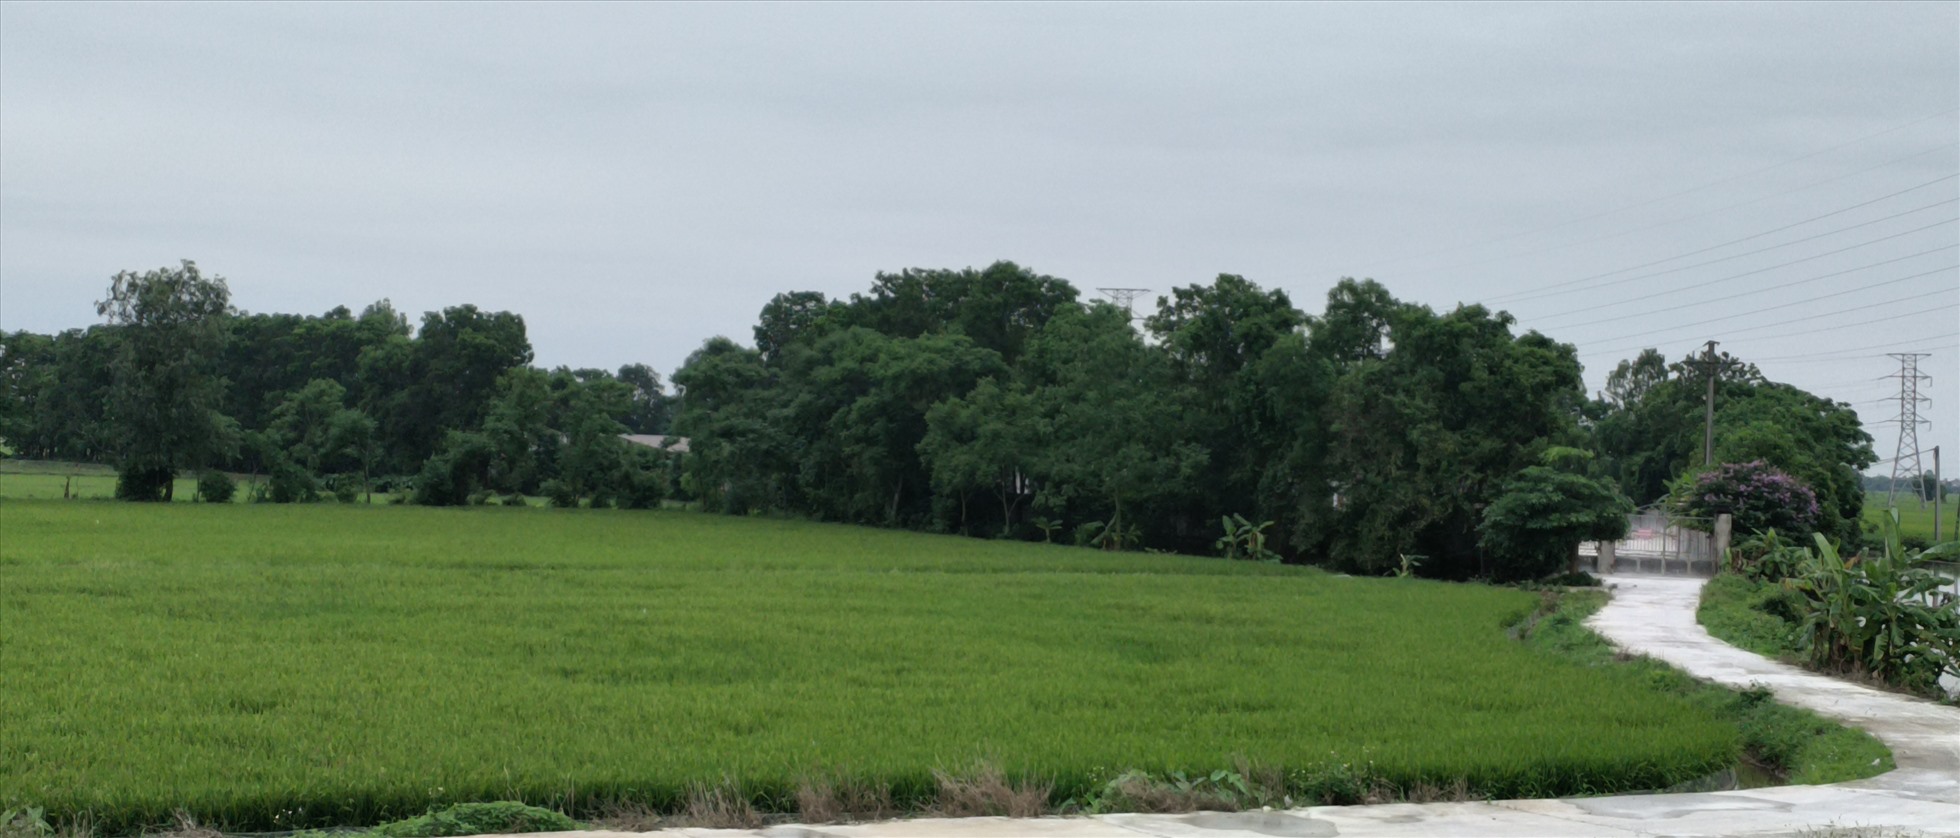 Trang trại chăn nuôi nằm ở ngoài cánh đồng giáp ranh 3 xã Bình Minh, Thượng Hiền và An Bồi cũ.